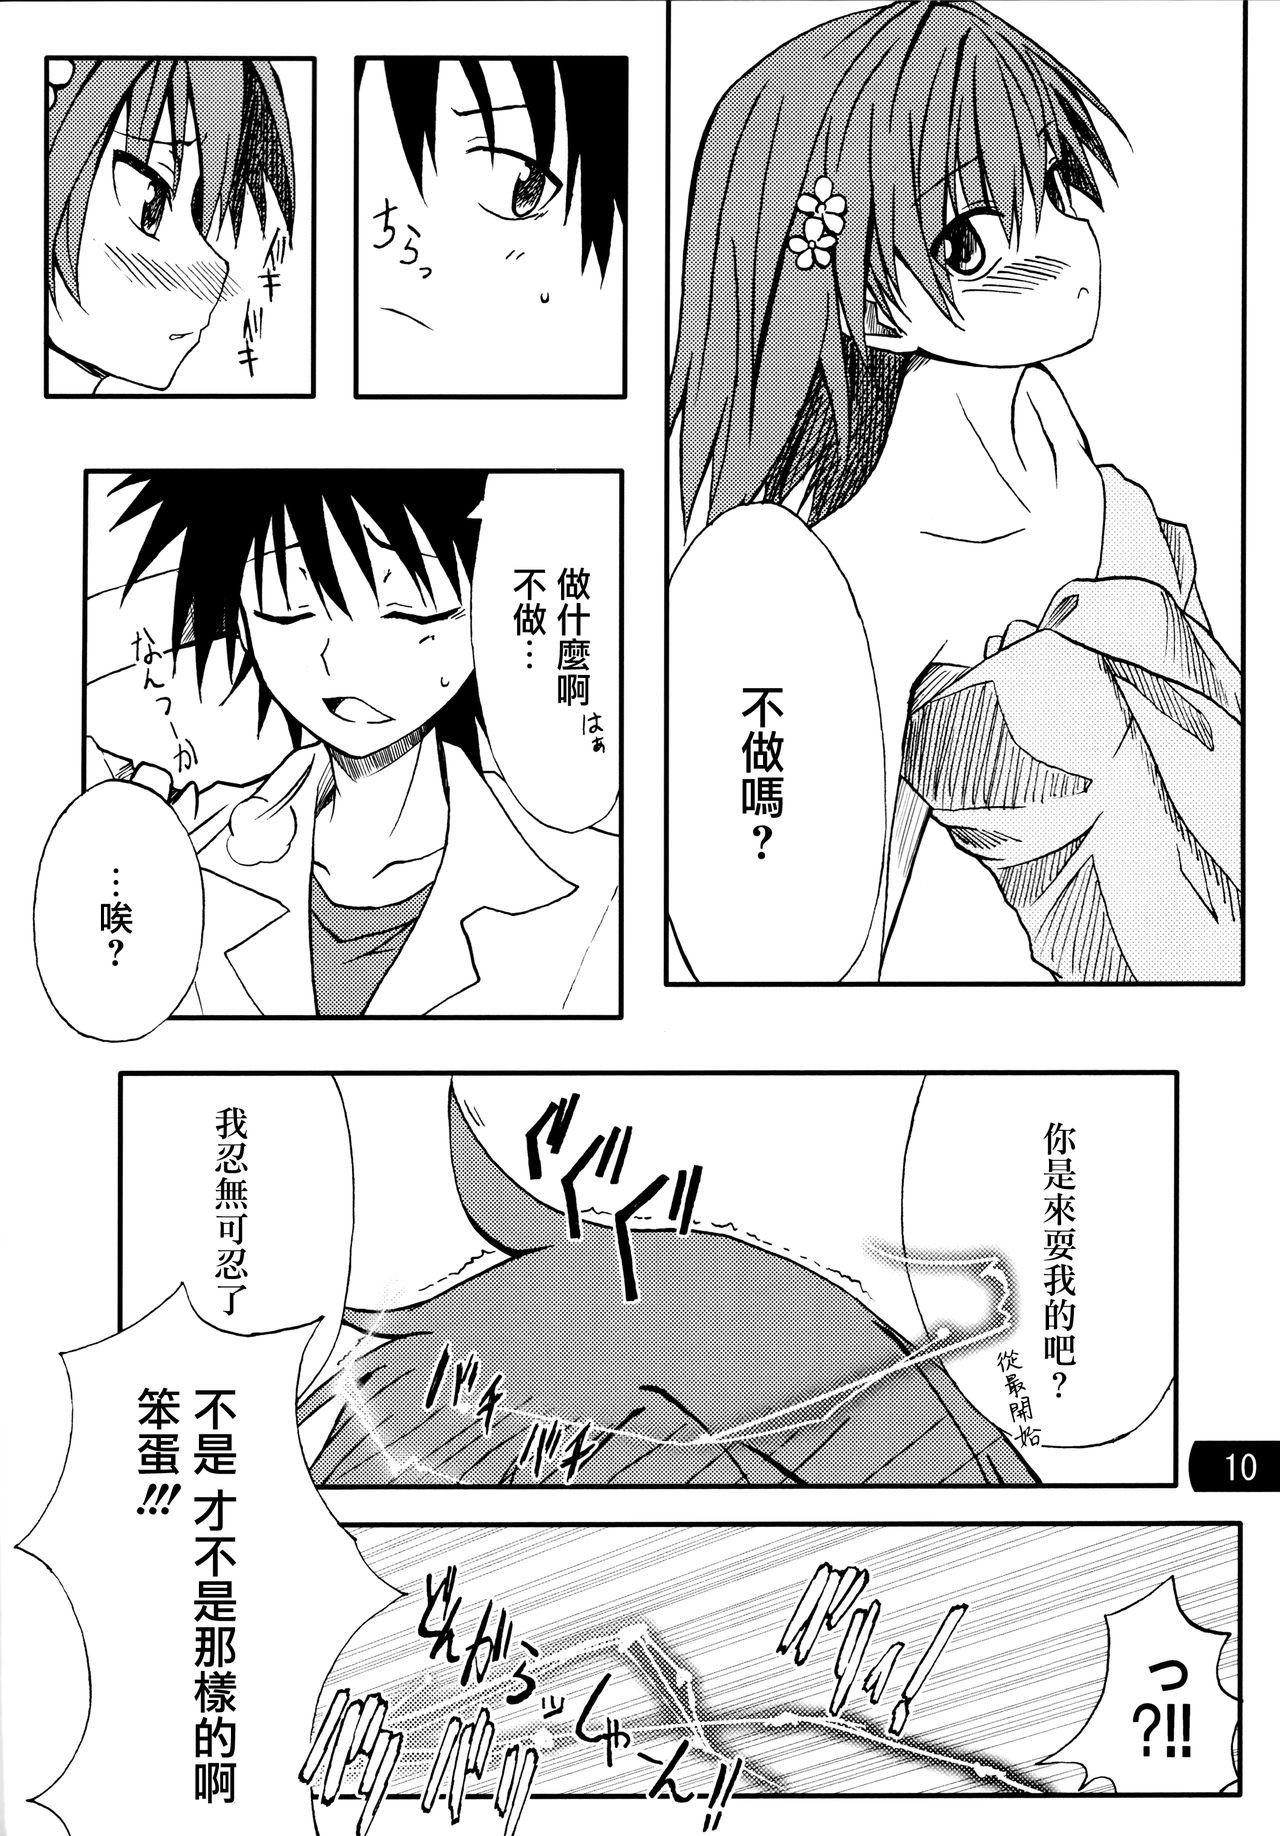 Family Toaru mousou no chou denji hon 02 - Toaru kagaku no railgun Amateur - Page 9